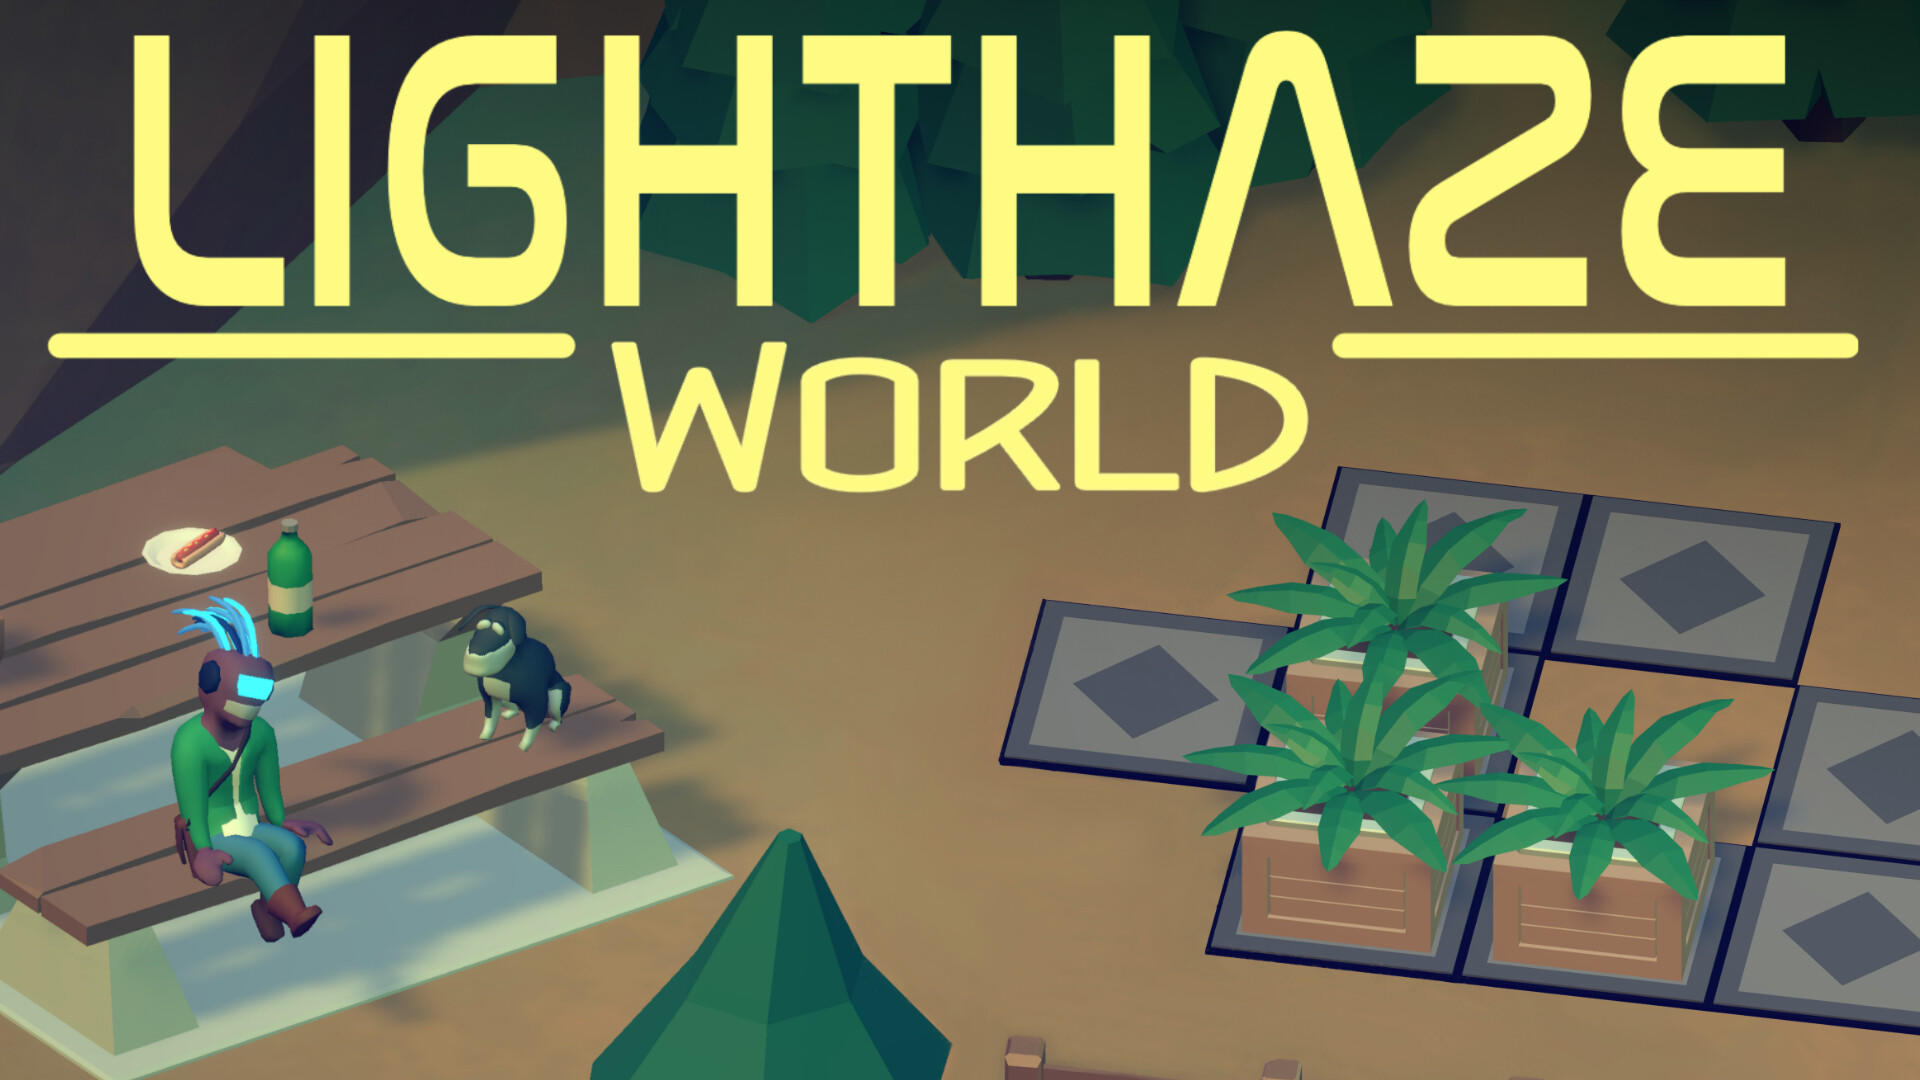 Lighthaze World 게임 스크린 샷